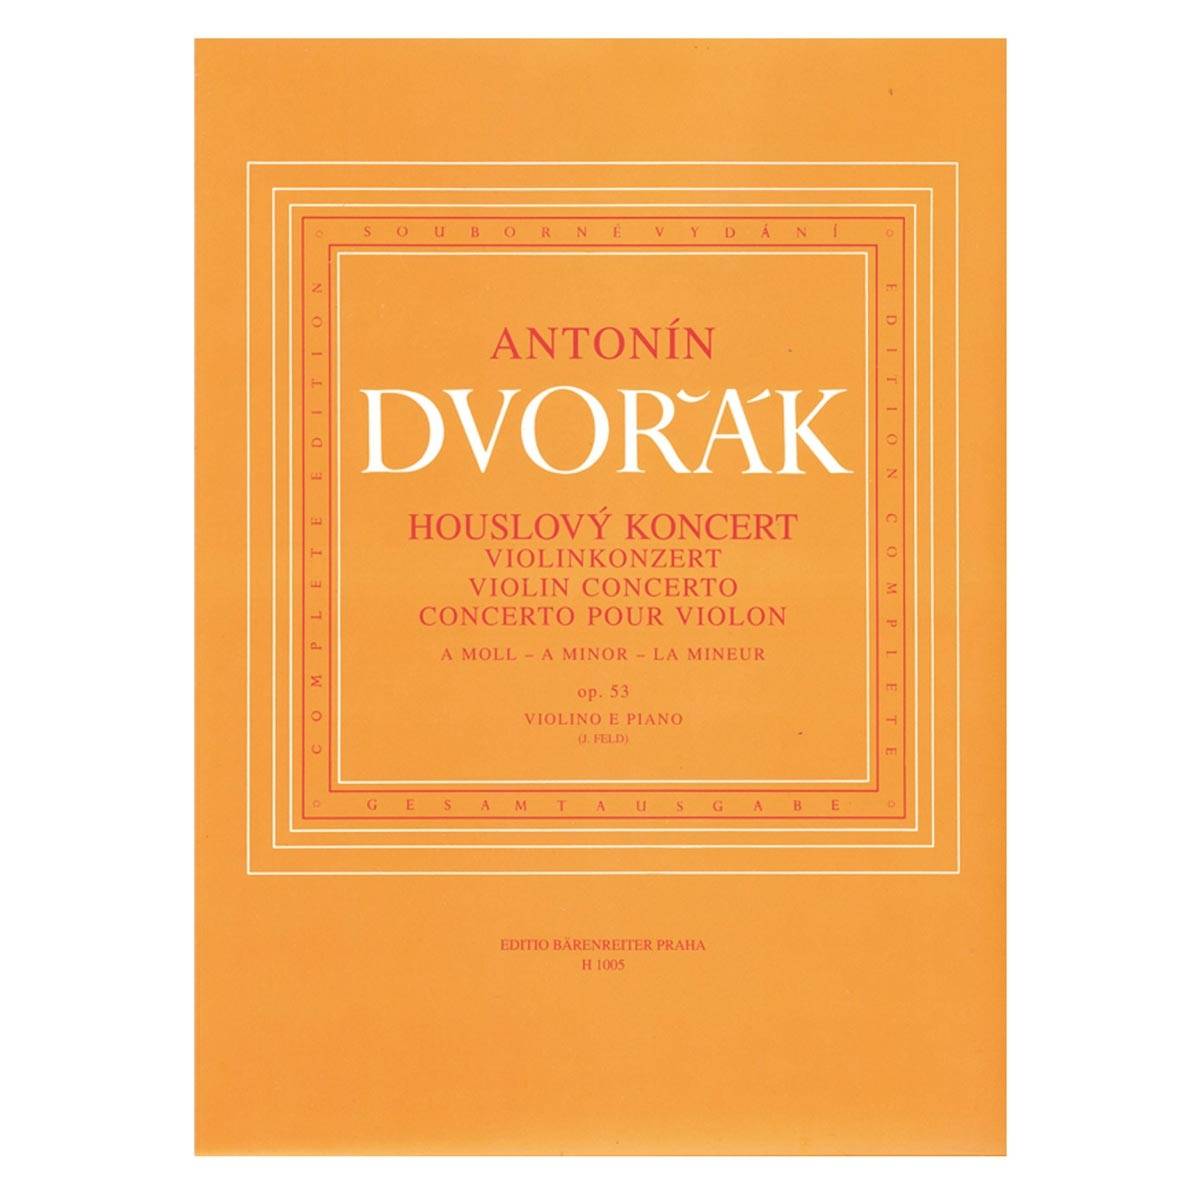 Dvorak - Violin Concerto In A Minor Op.53 Reduction